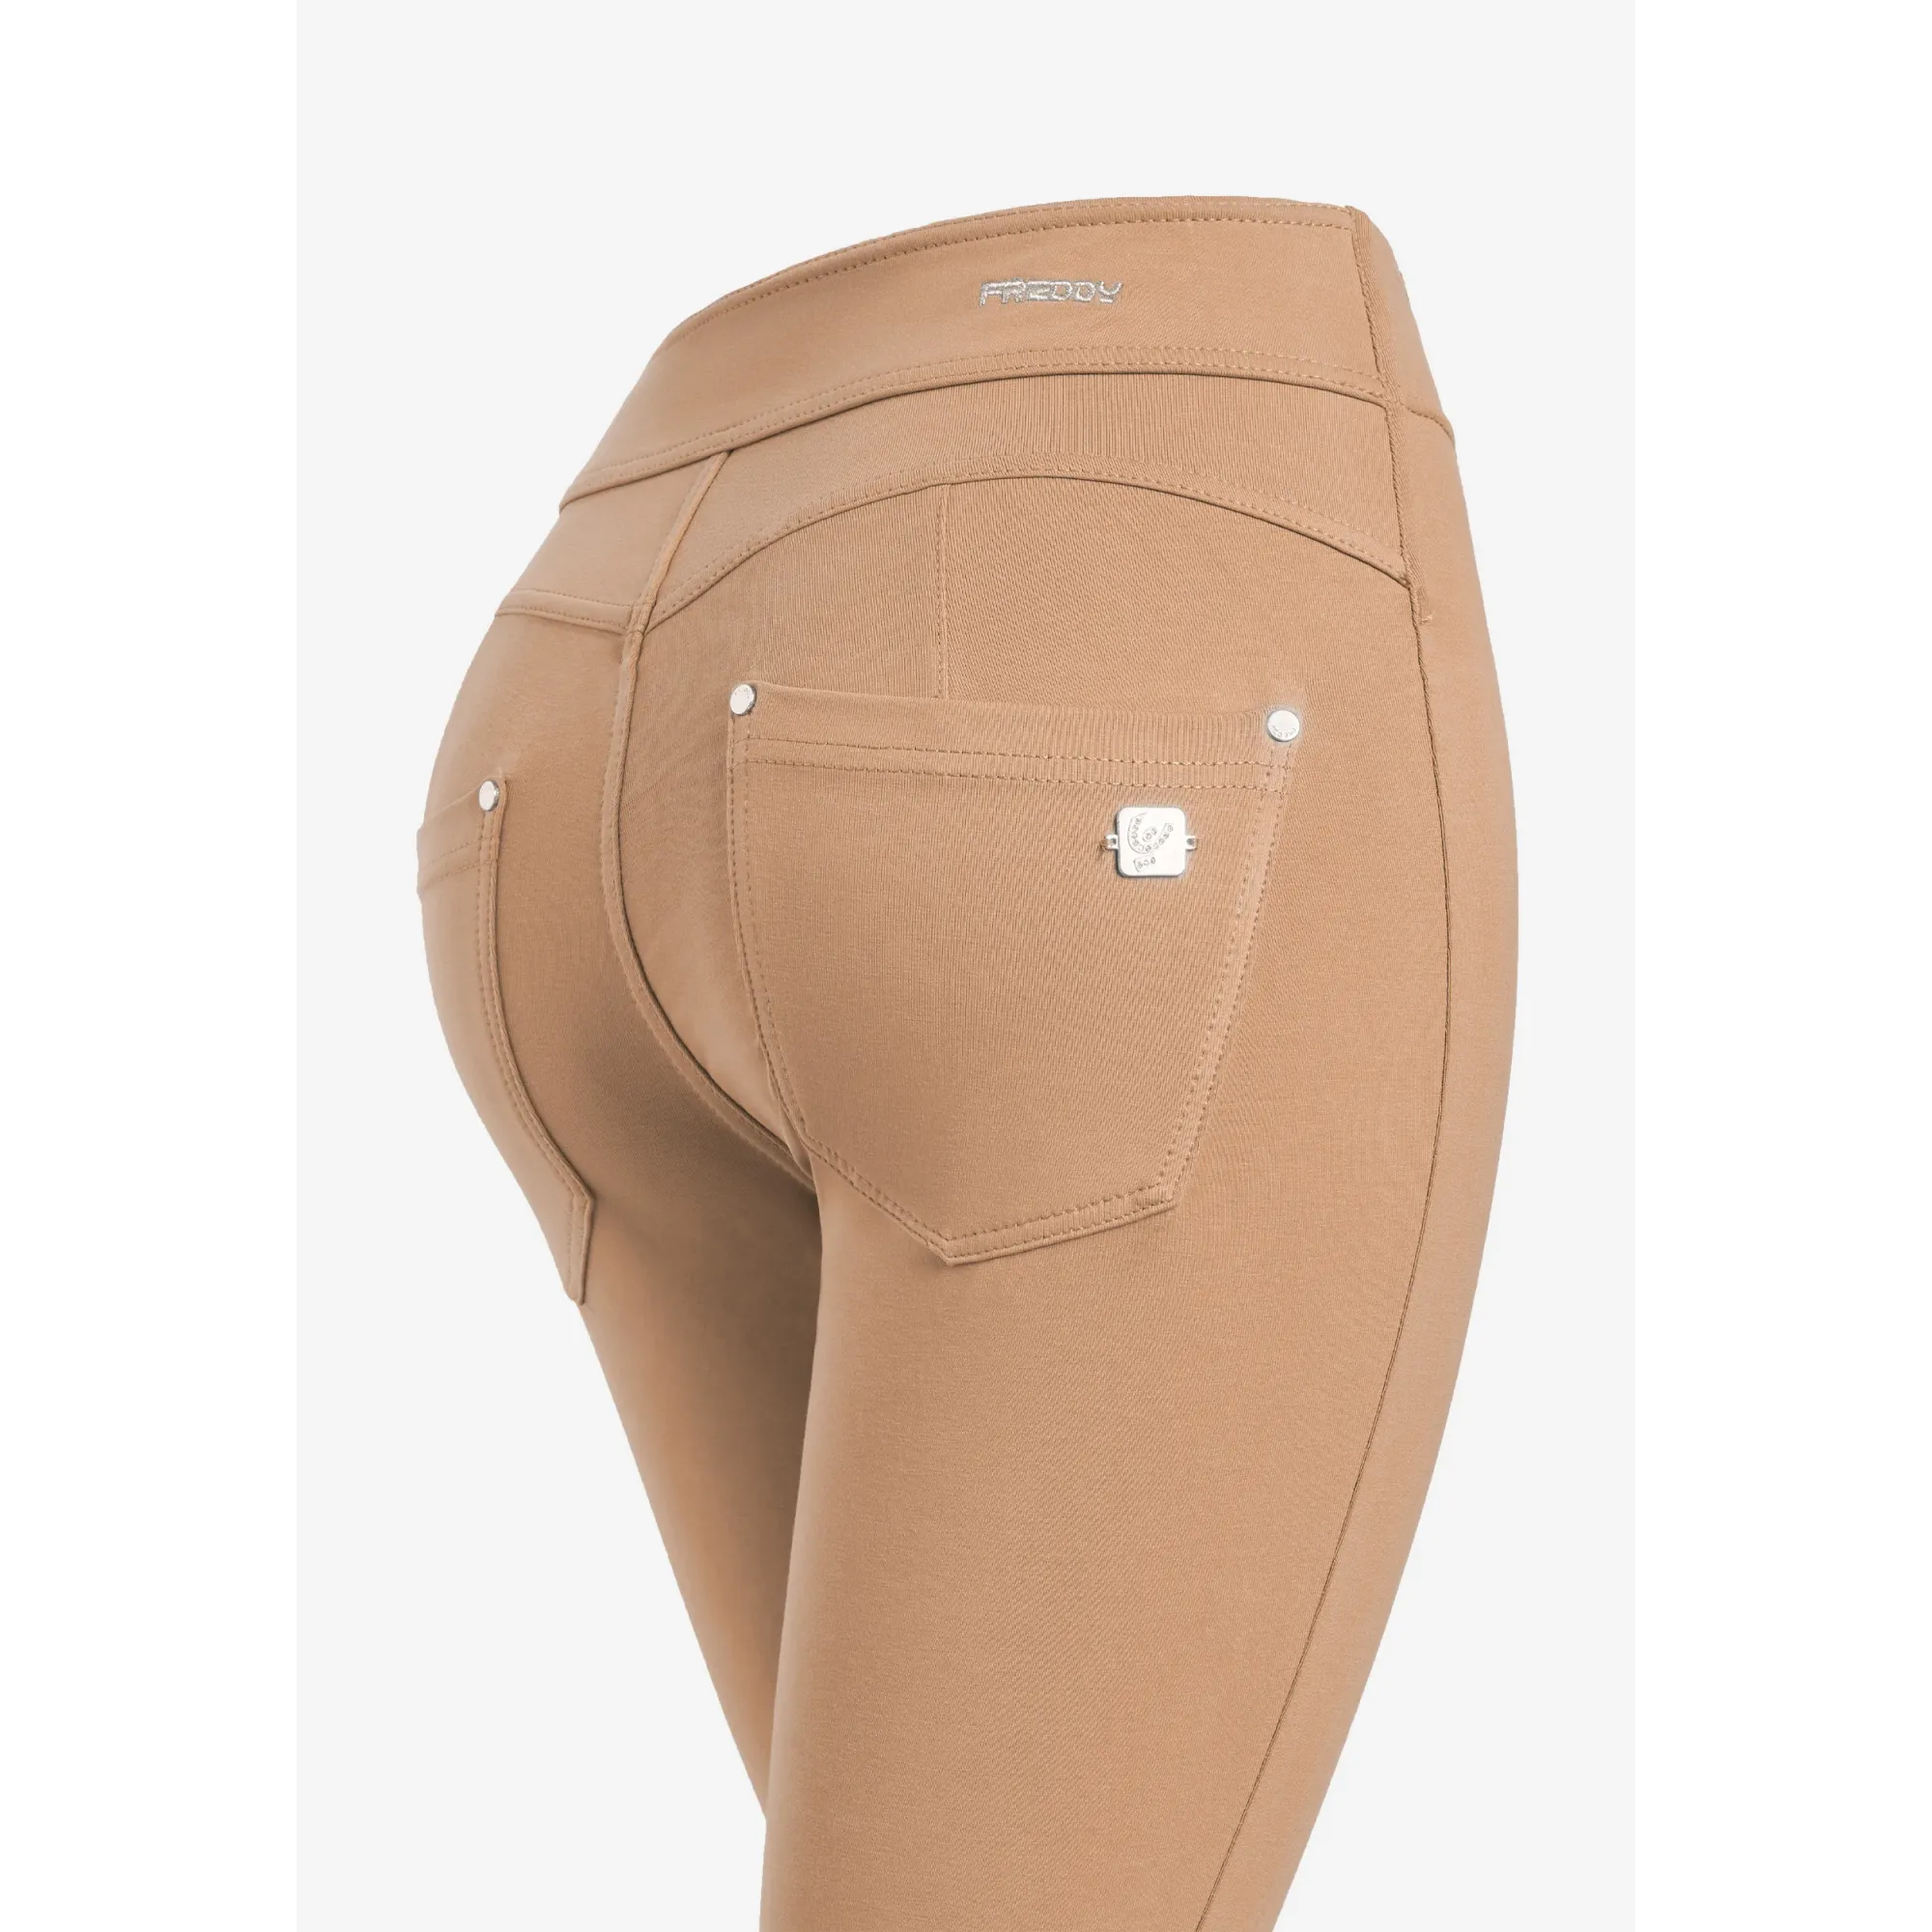 Freddy N.O.W.® Yoga Eco Damen Comfort Hose - Super High Waist Skinny - Mit Nähten auf den Beinen - Hellbraun - M44